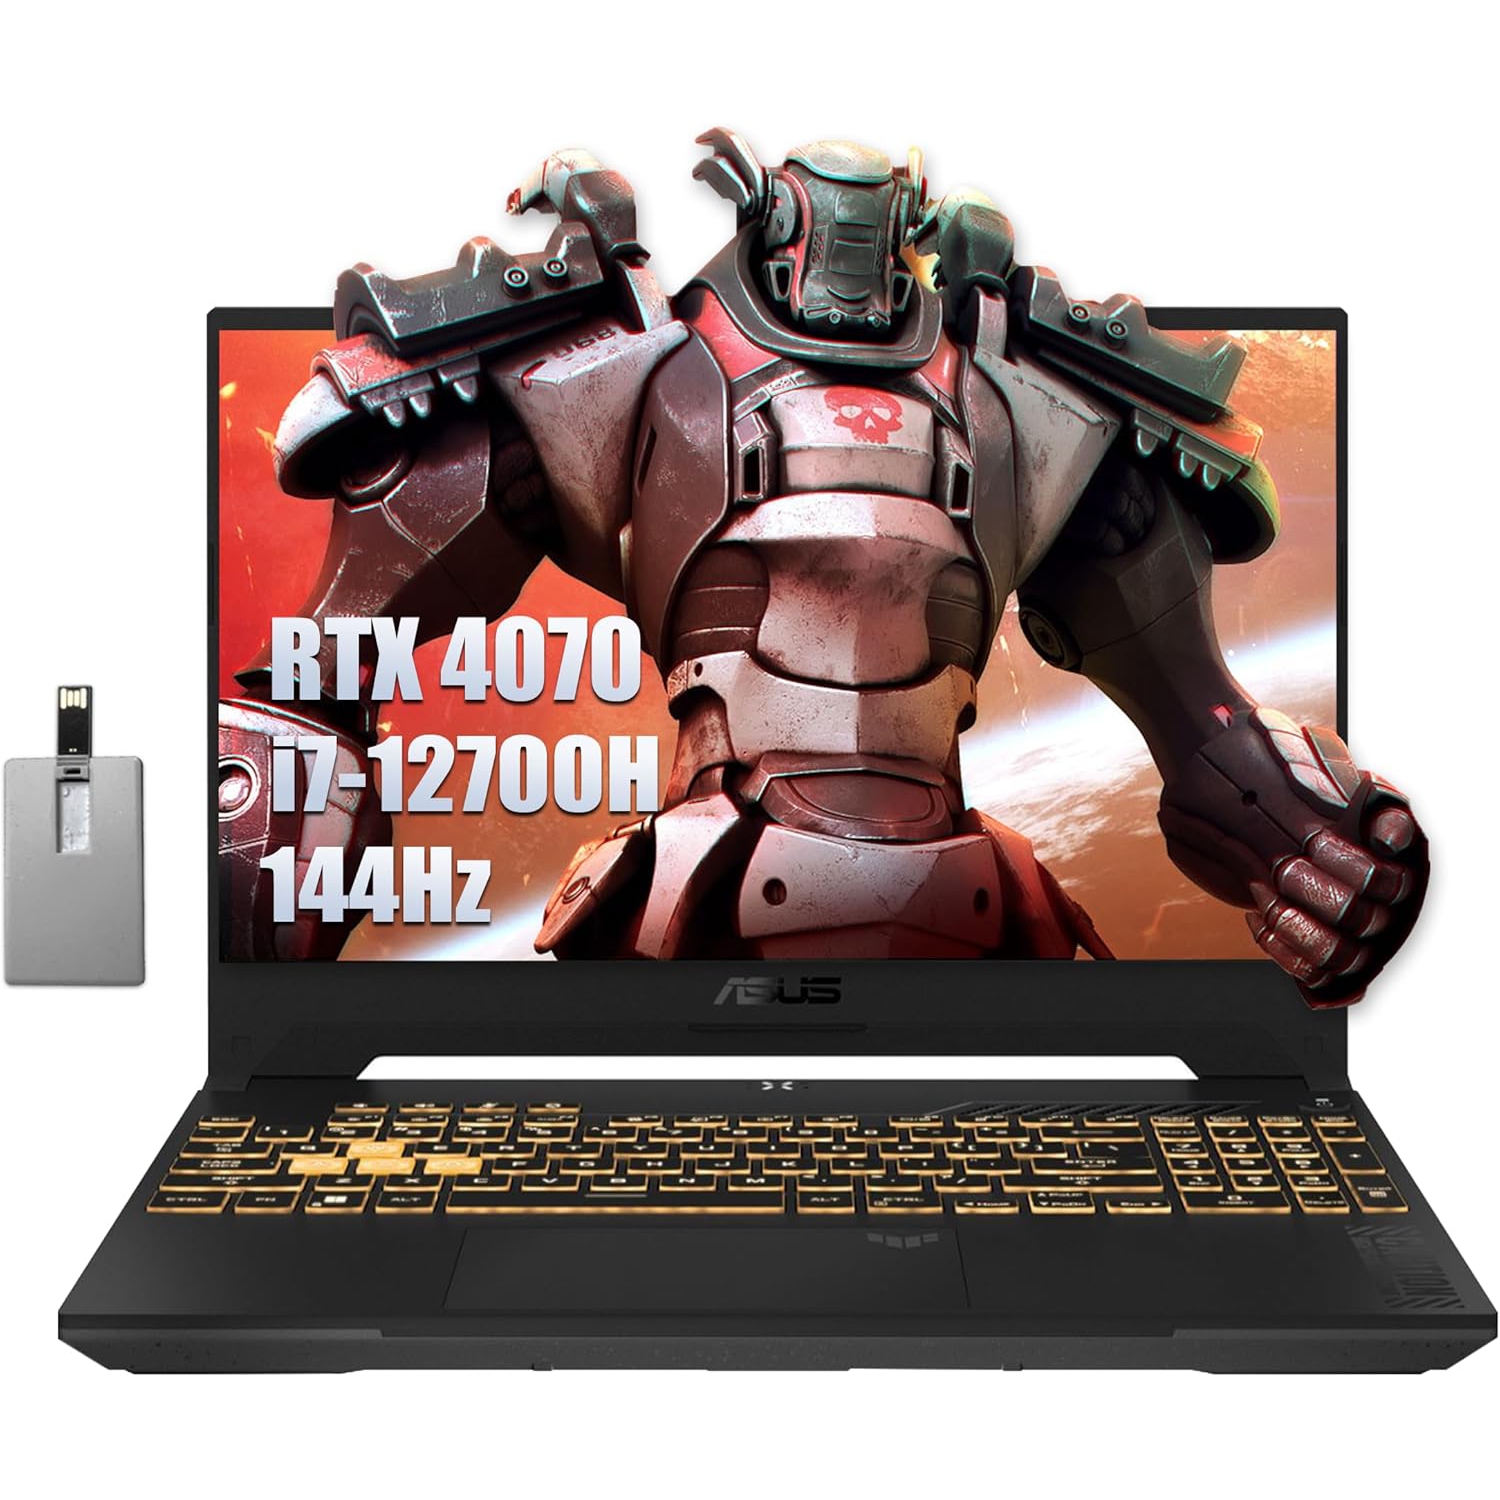 ASUS TUF F15 15.6" 144Hz FHD Gaming Laptop, Intel Core i7-12700H, NVIDIA GeForce RTX 4070, 4TB SSD, 64GB RAM, RGB Keyboard, Numpad, Smart AMP Audio, Wi-Fi 6, Gray, Win 11 Pro